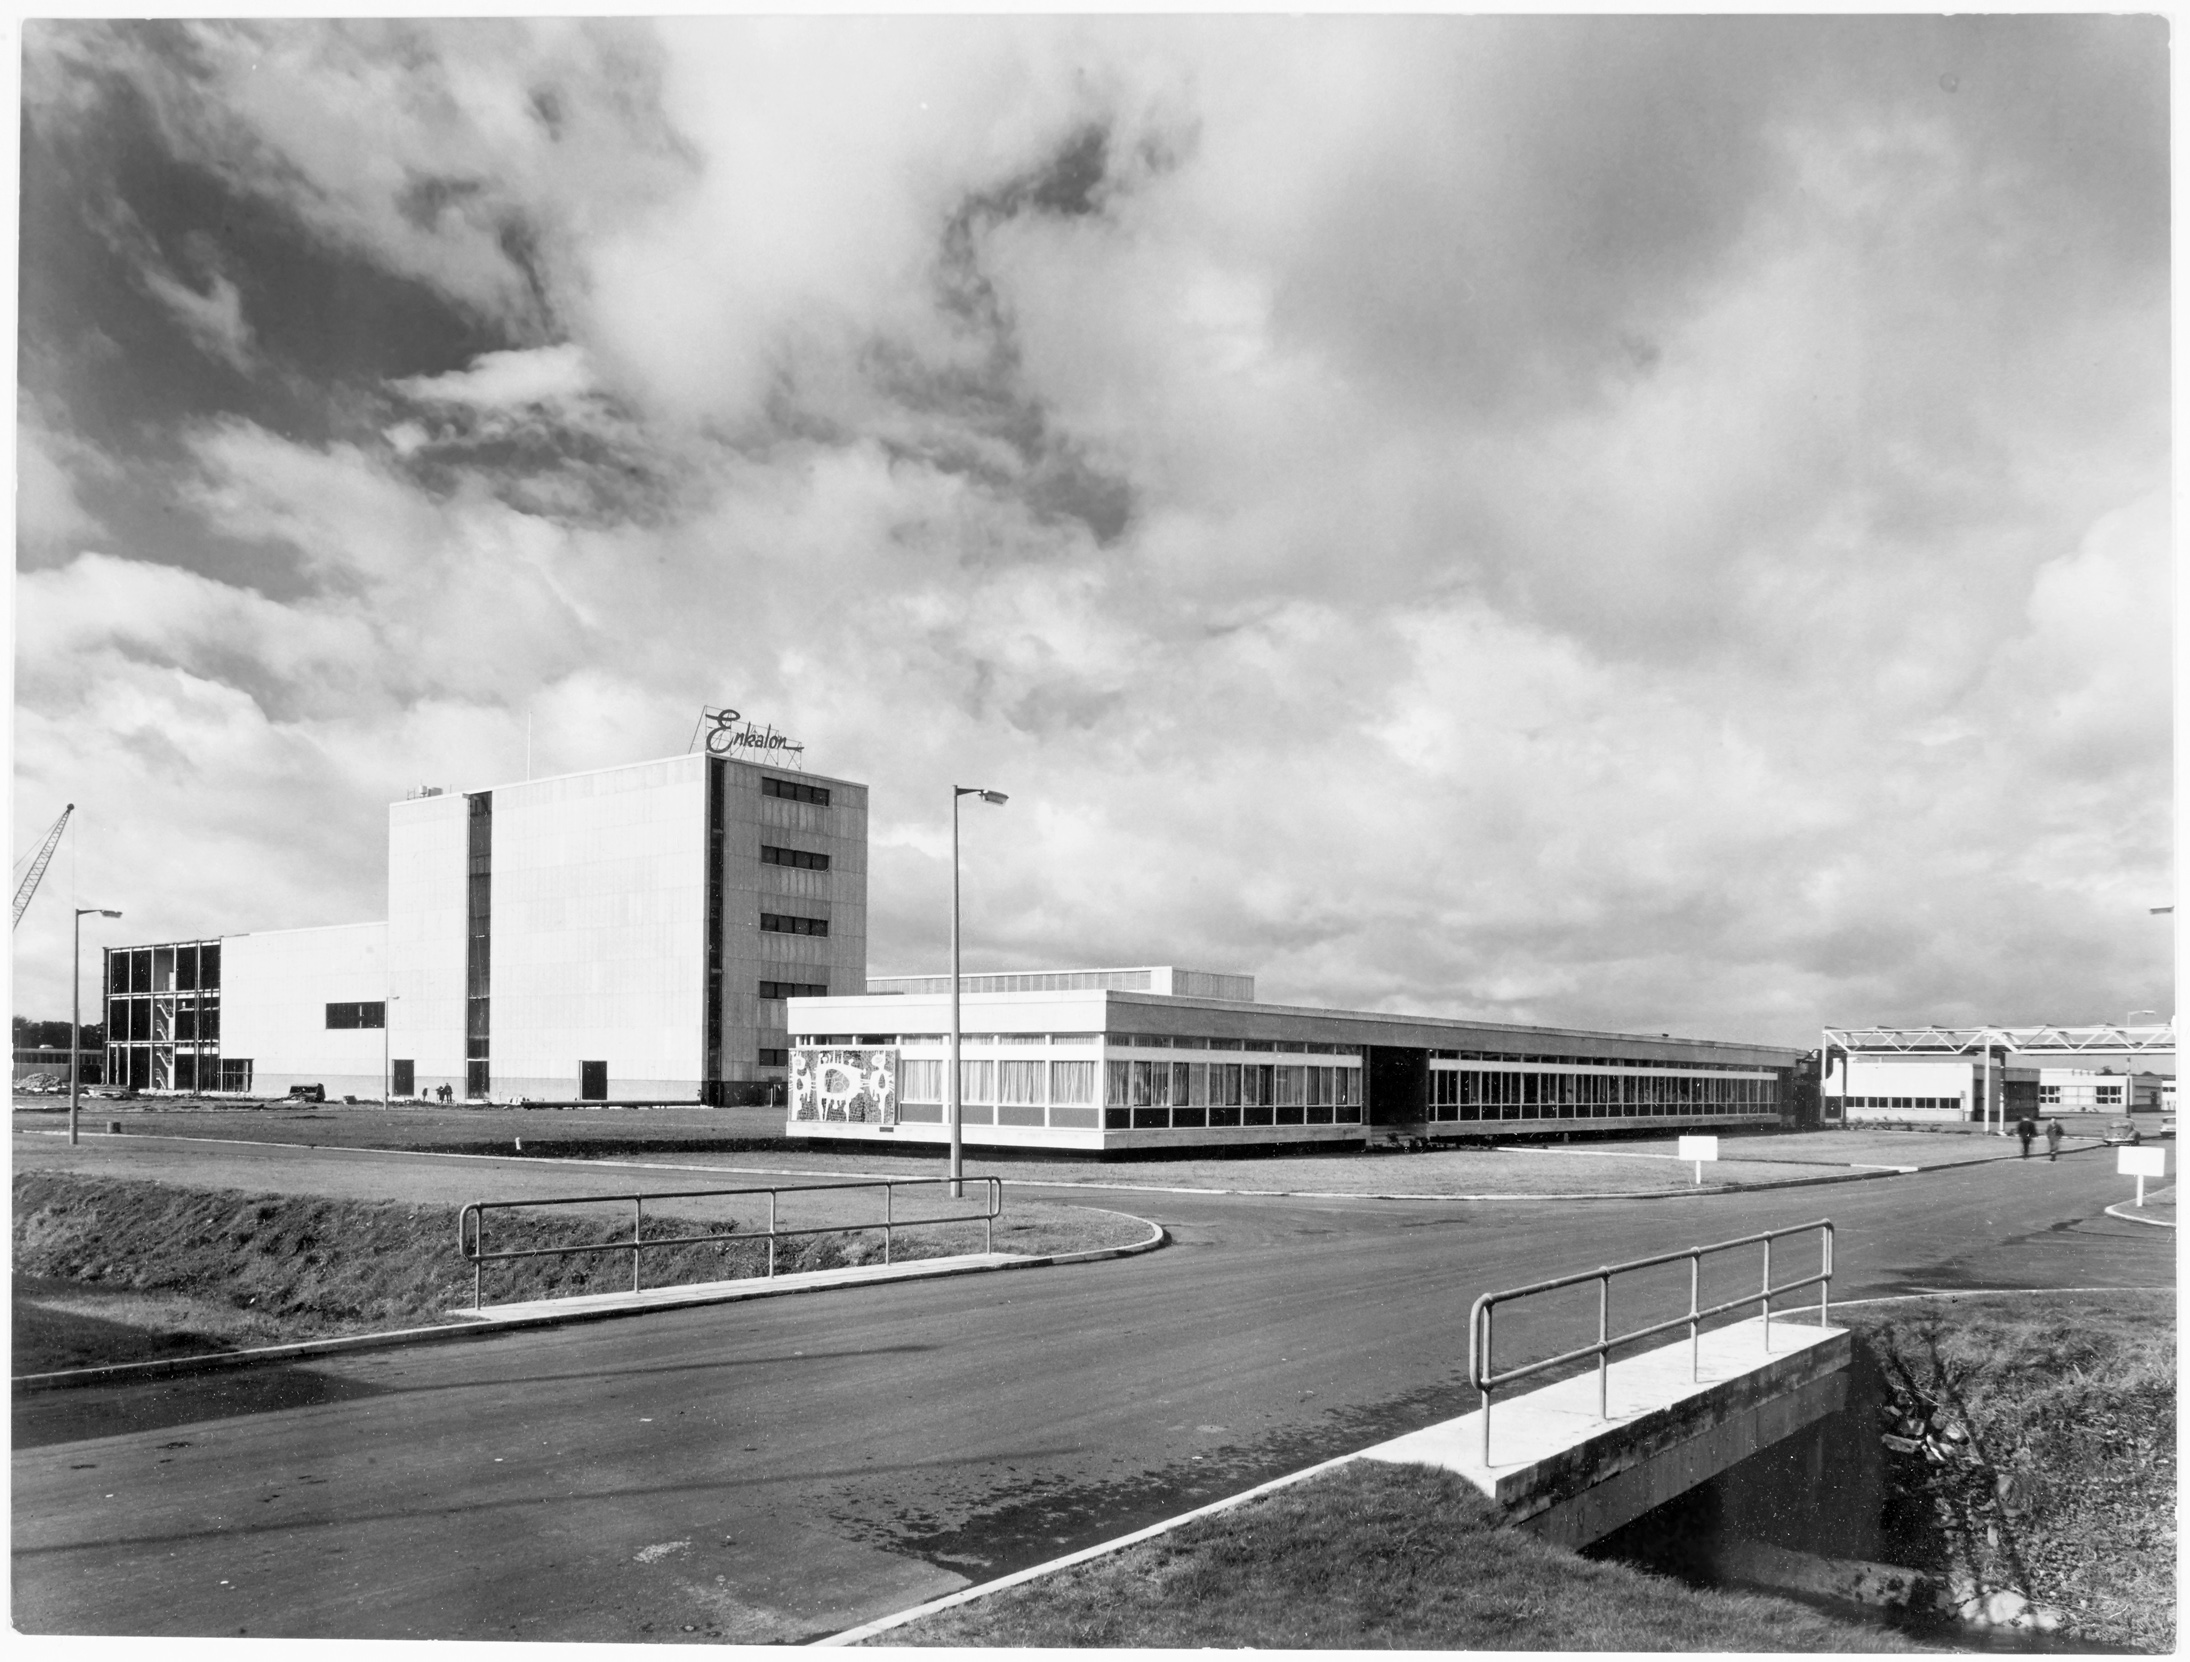 British Enkalon Factory, Antrim, Co. Antrim. c.1959 PRONI Ref: D4069/1/6